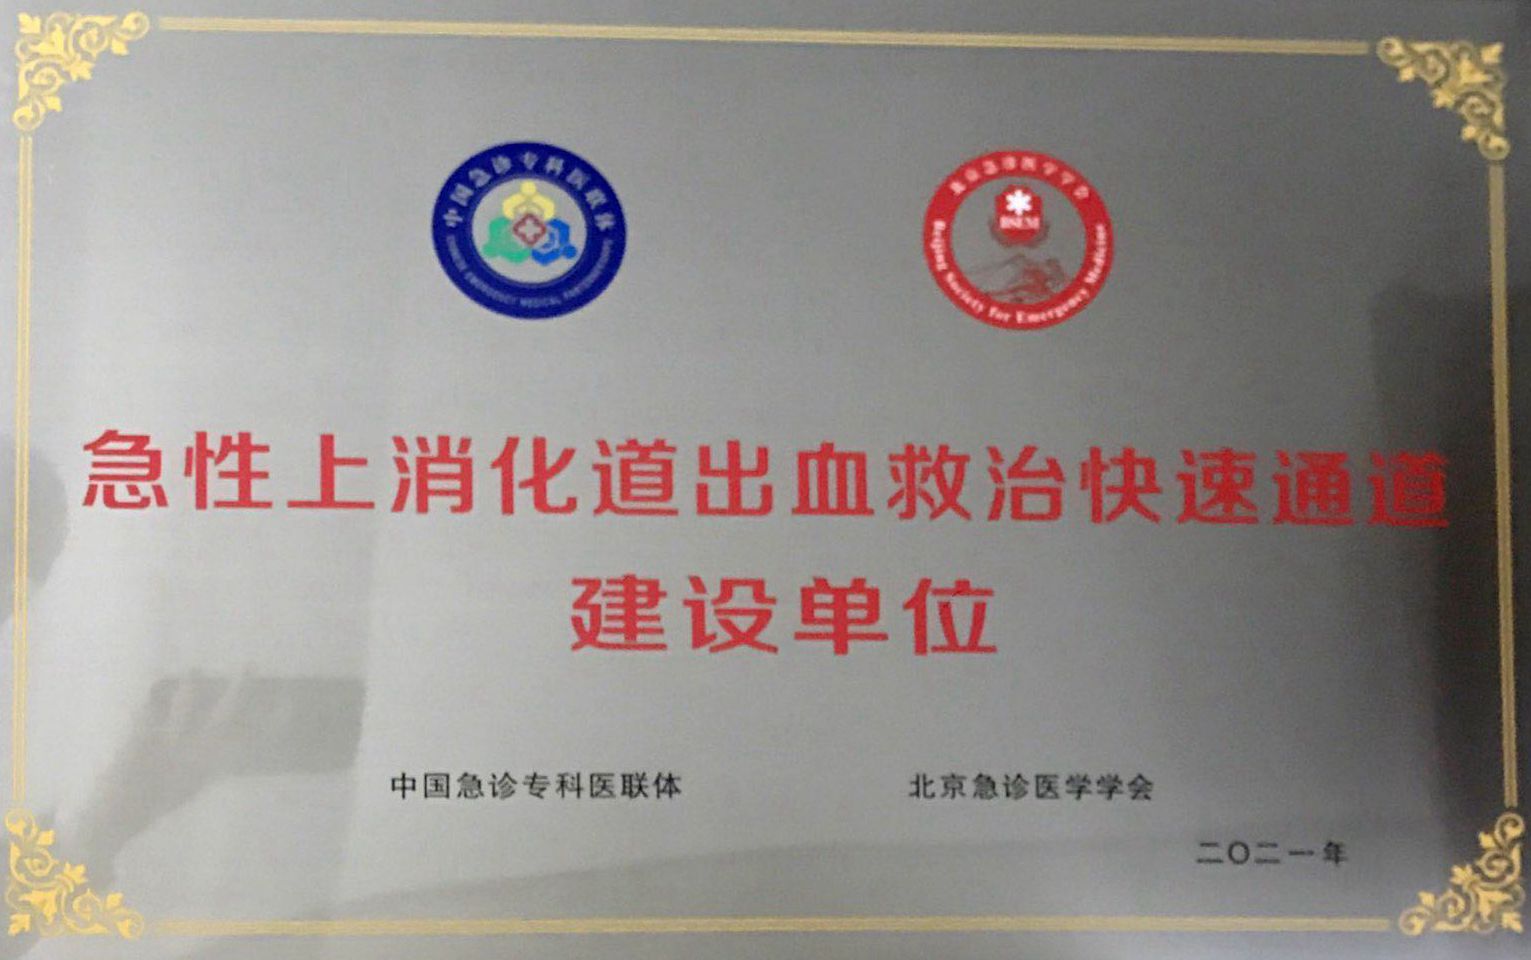 湘潭市第一人民医院开设“急救快速通道”挽救大出血病人